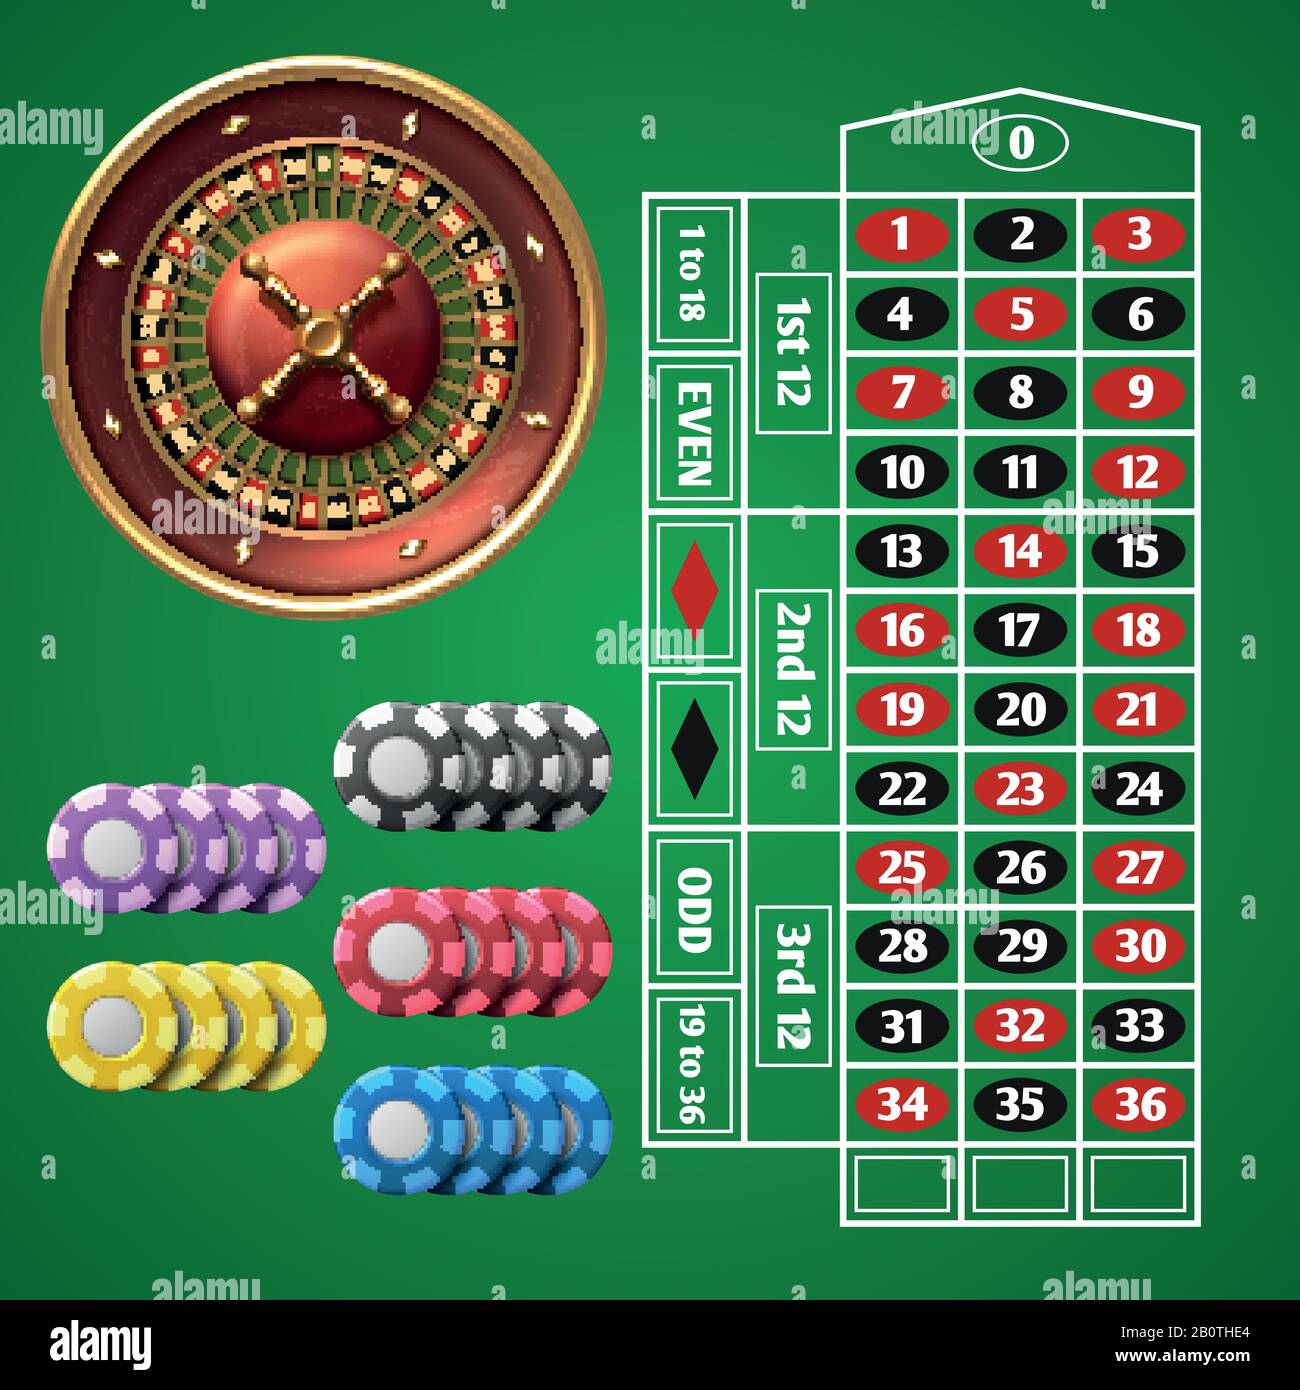 Roulette de casino en ligne et table de jeu avec jeu vectoriel de jetons.  Illustration design table de roulette pour casino Image Vectorielle Stock -  Alamy